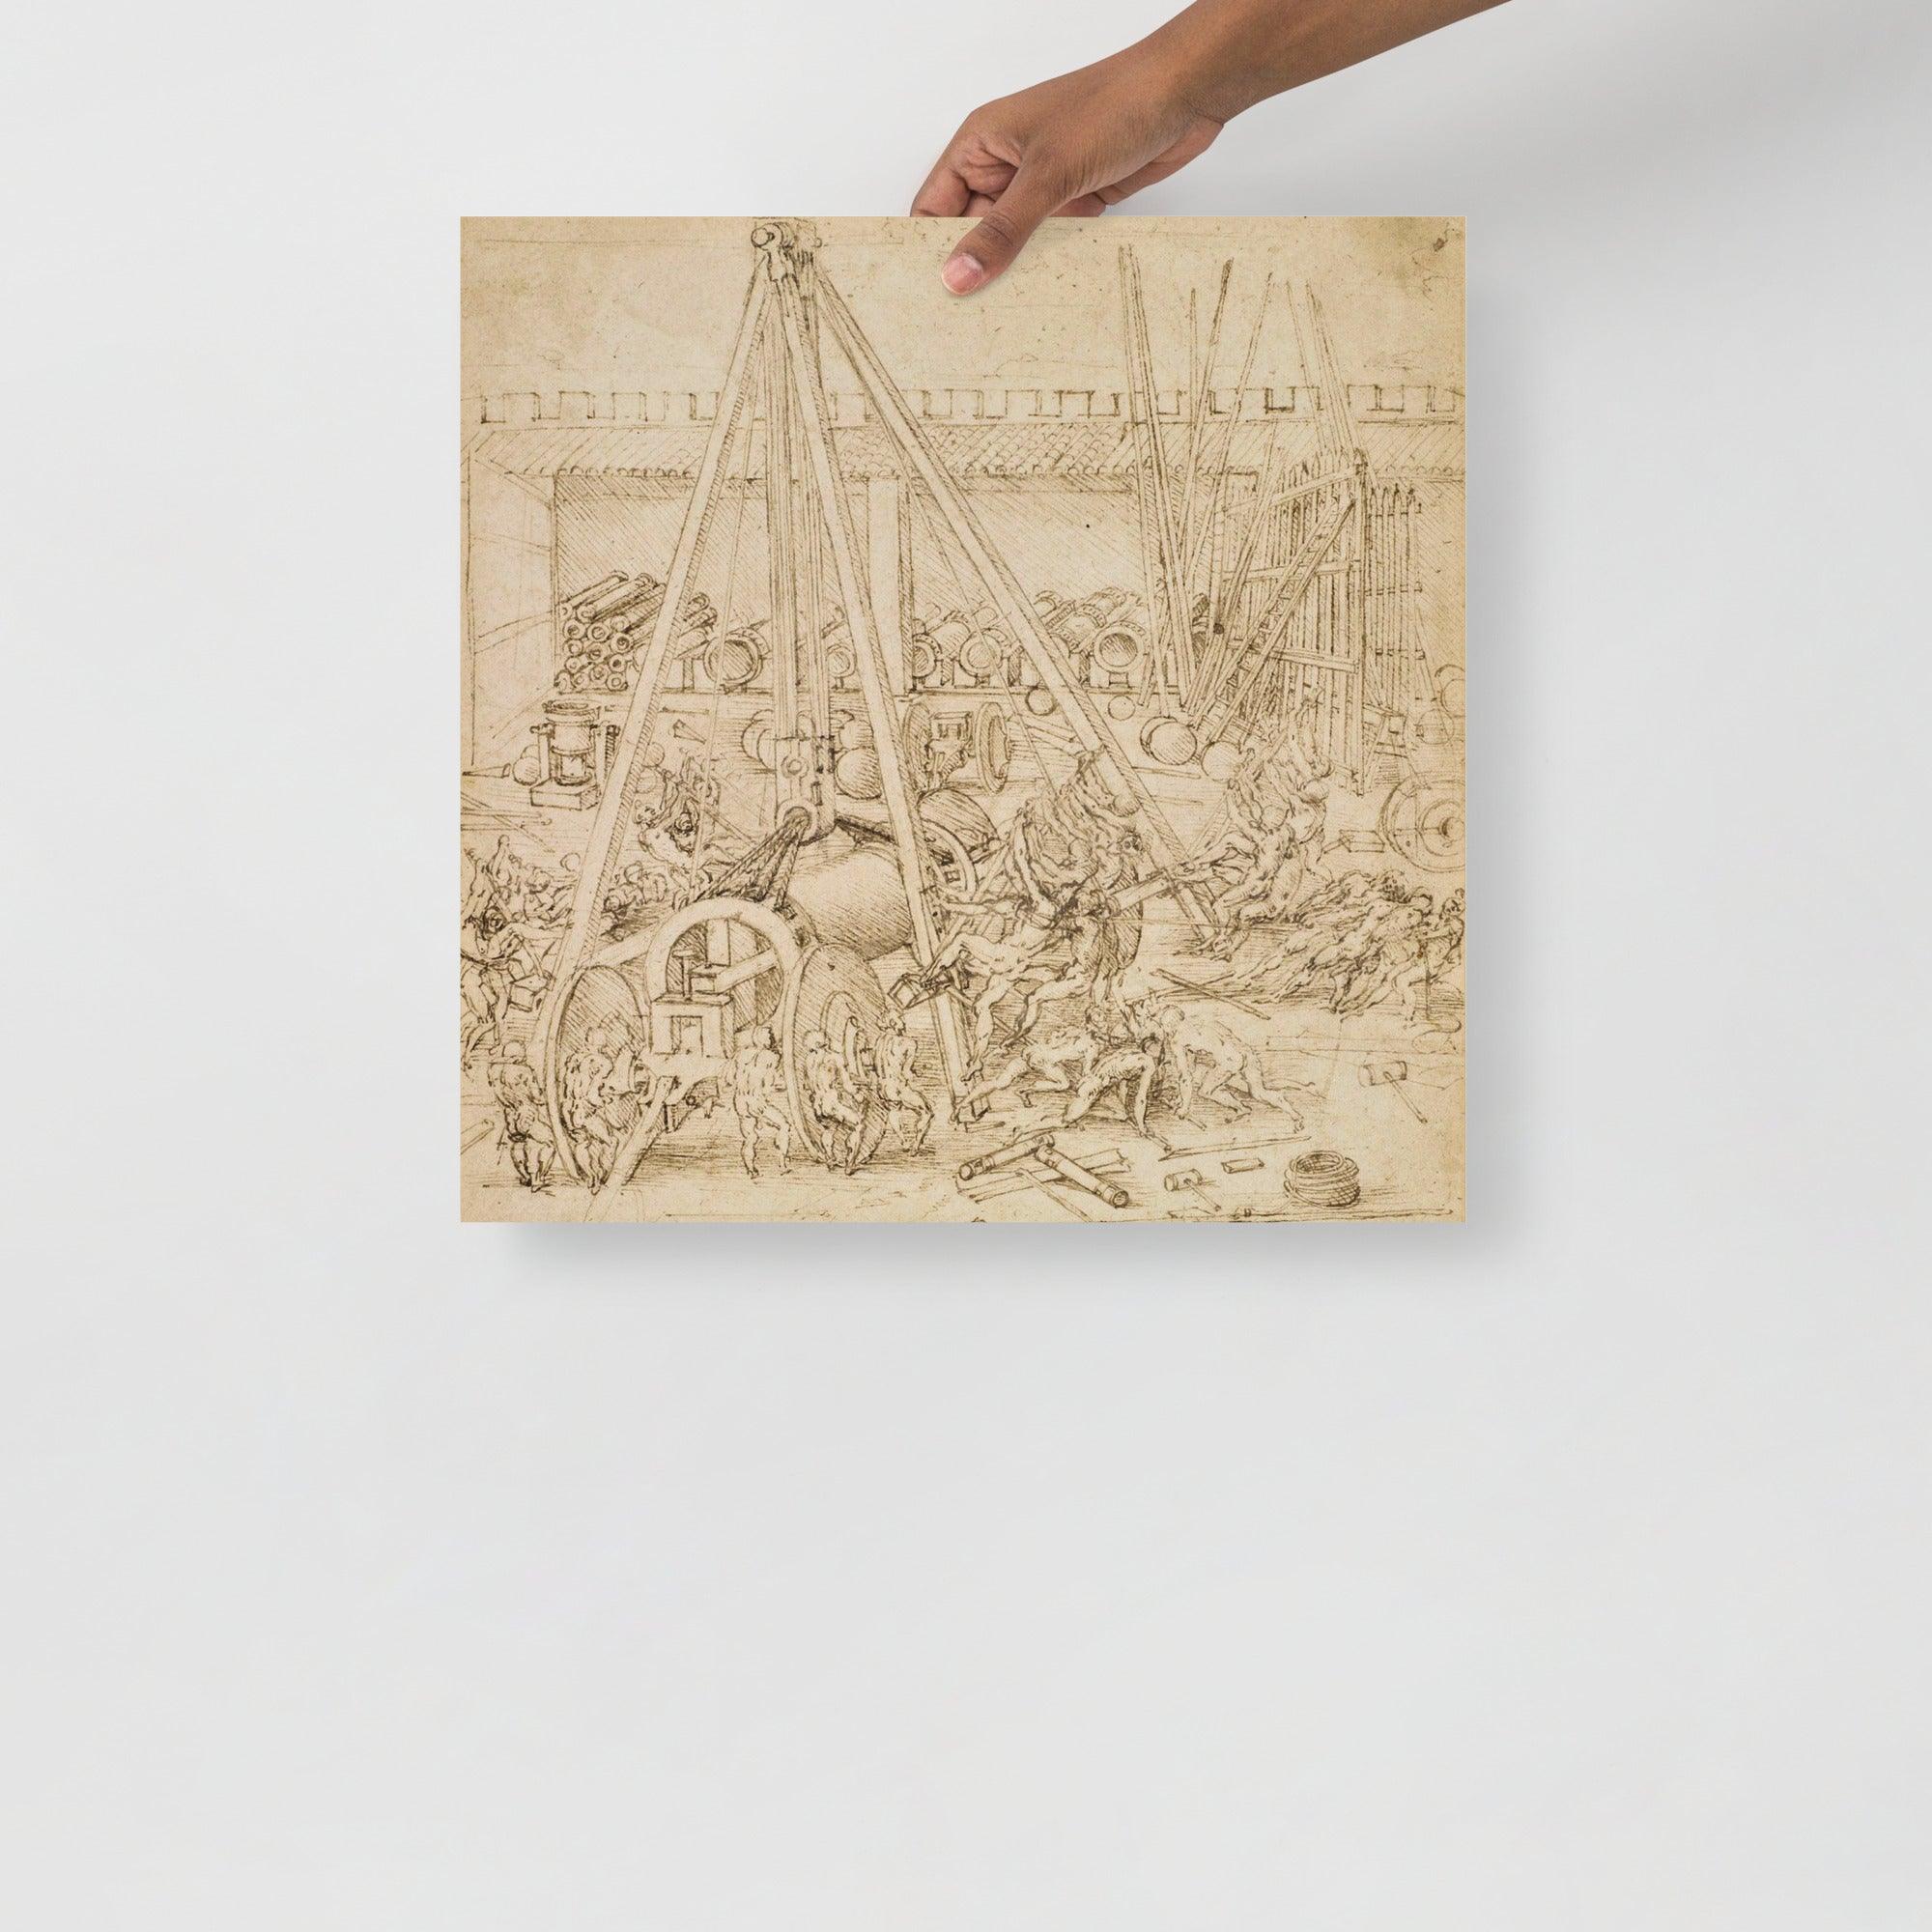 A Scene in an Arsenal by Leonardo Da Vinci poster on a plain backdrop in size 18x18”.